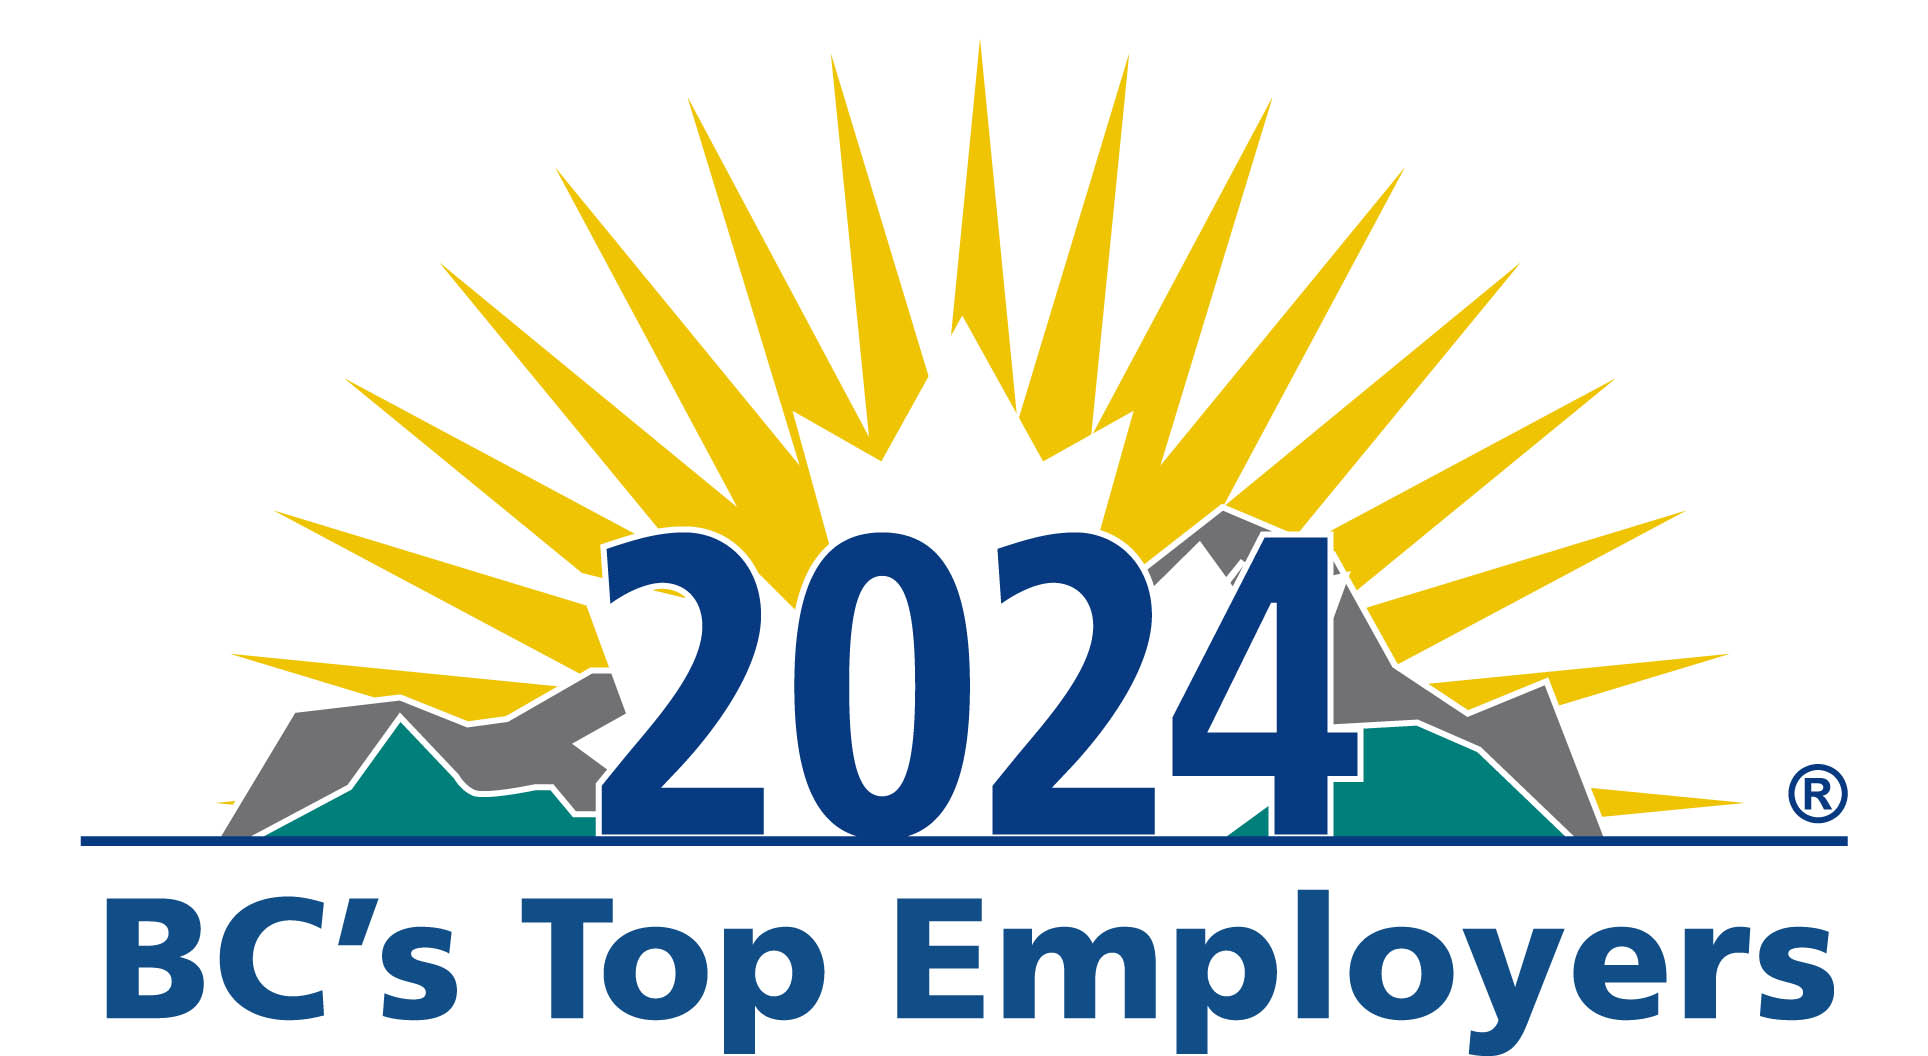 2024 BCs top employers logo